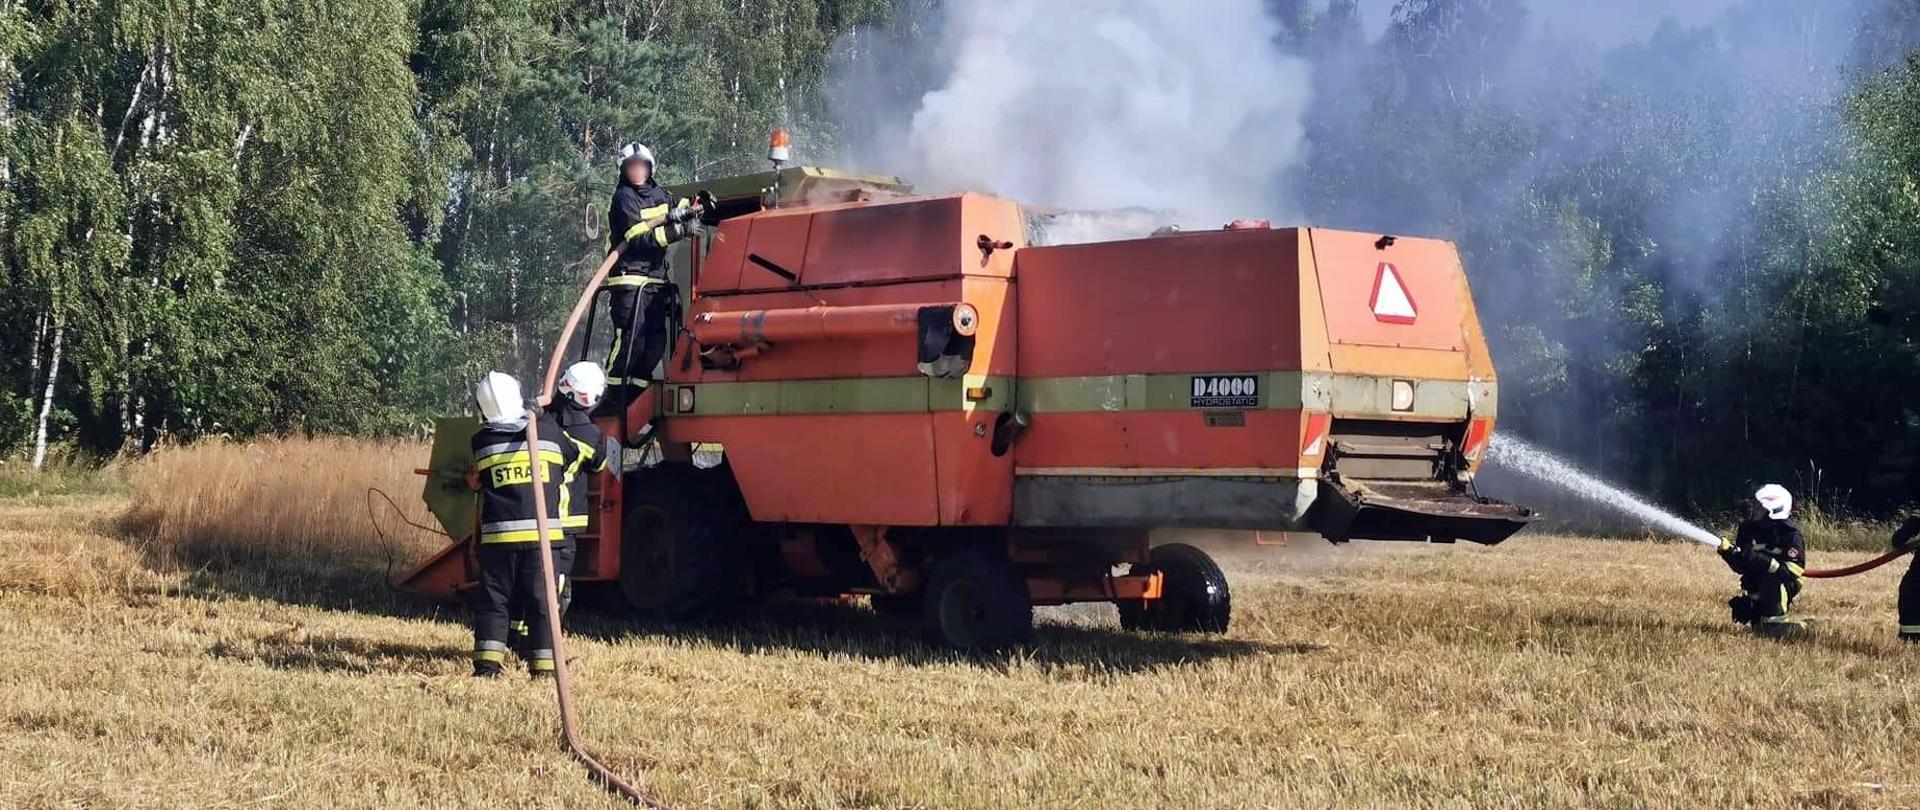 20 lipca 2022 roku w miejscowości Młynki (gm. Wodynie) doszło do pożaru kombajnu na polu.